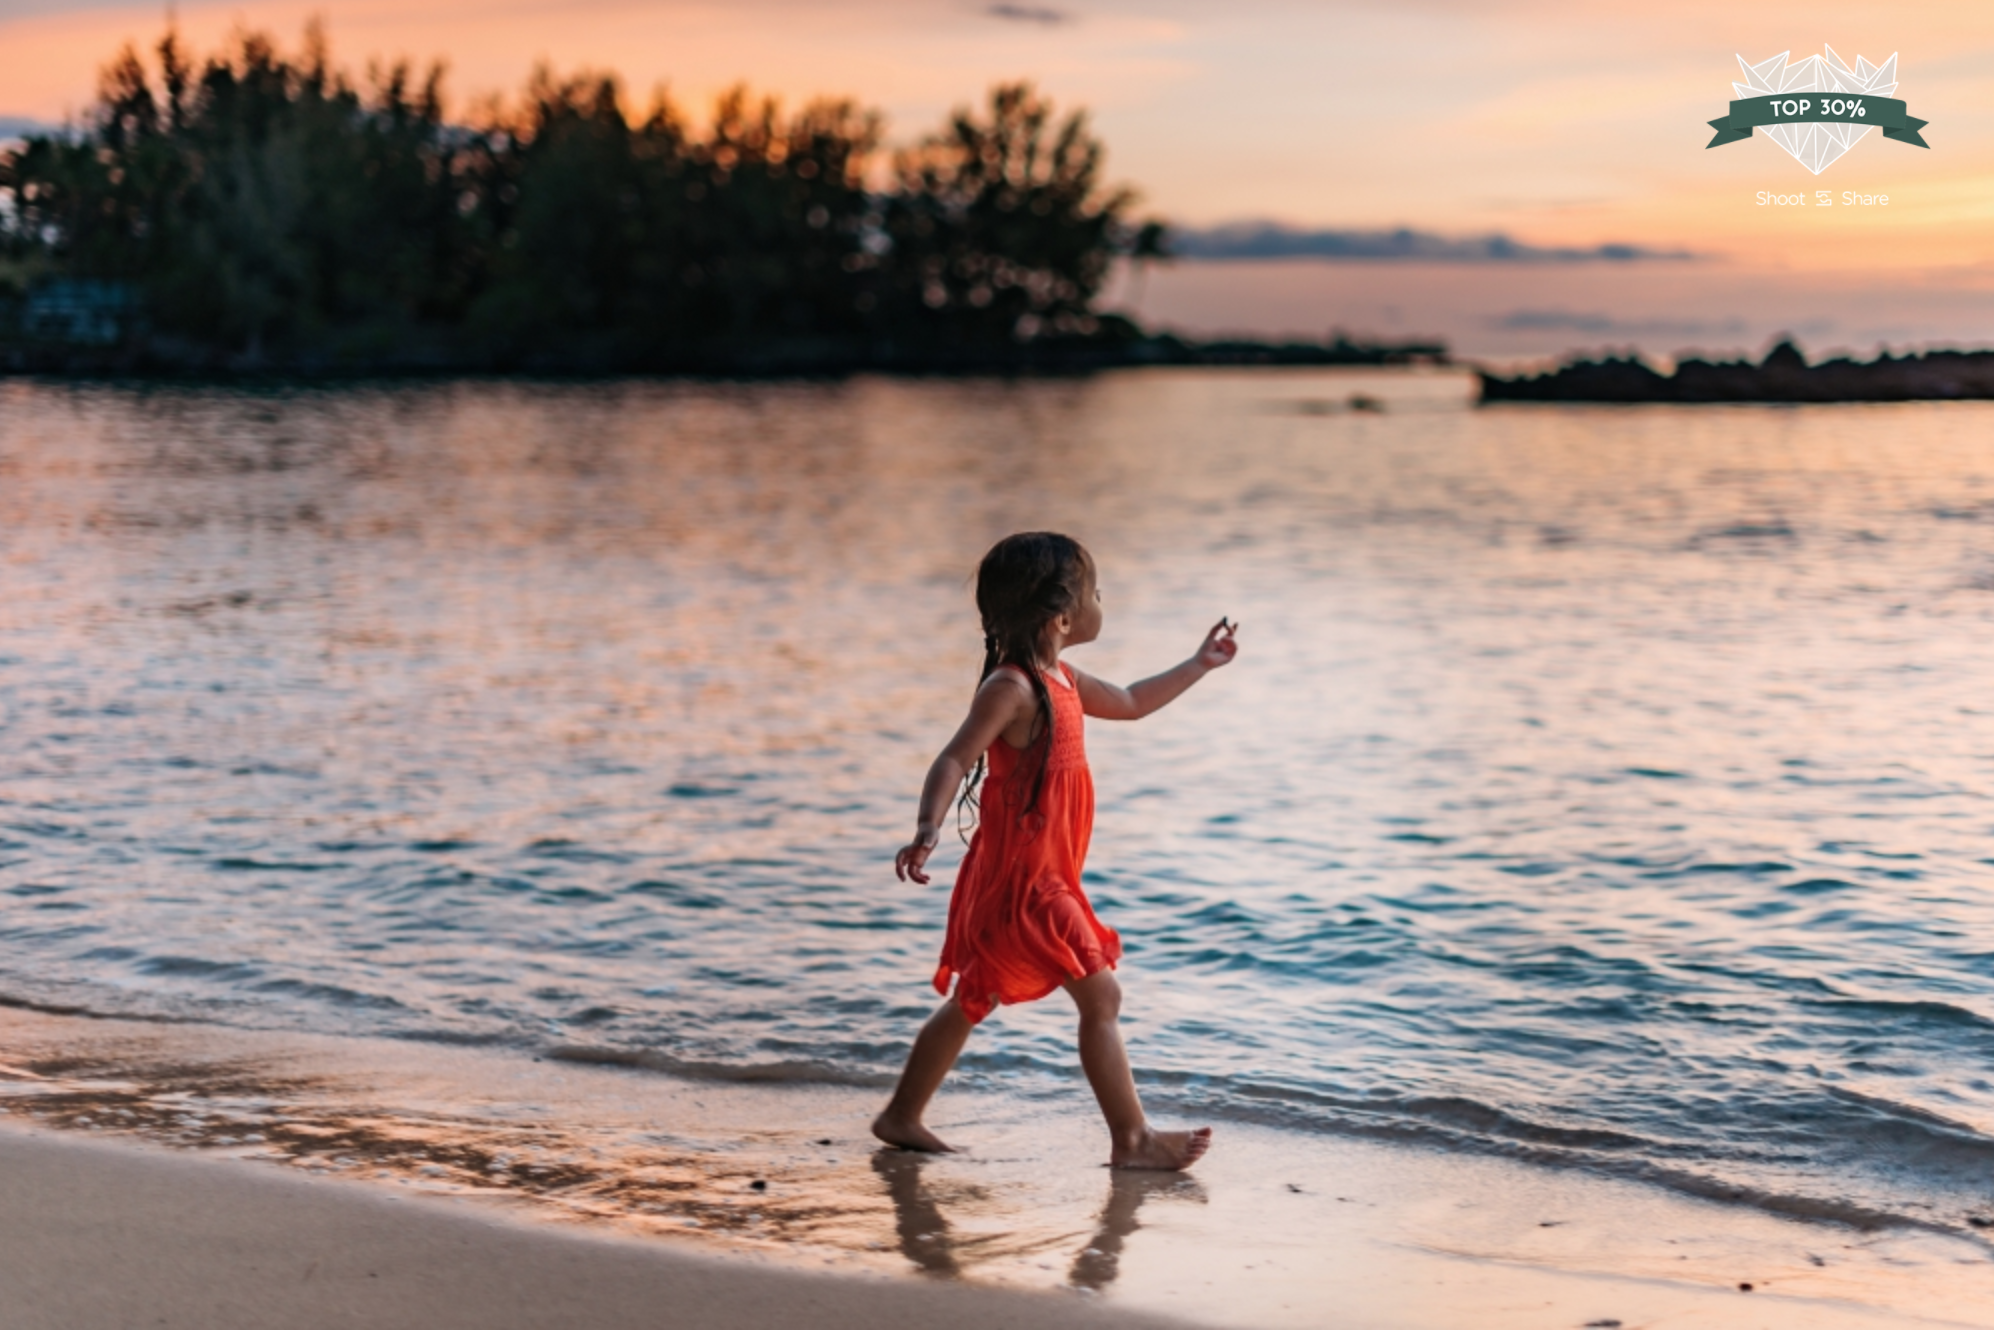 Shoot-Share-Contest-2018-Hawaii-Top-30-Kids-Waikoloa-photographer.png